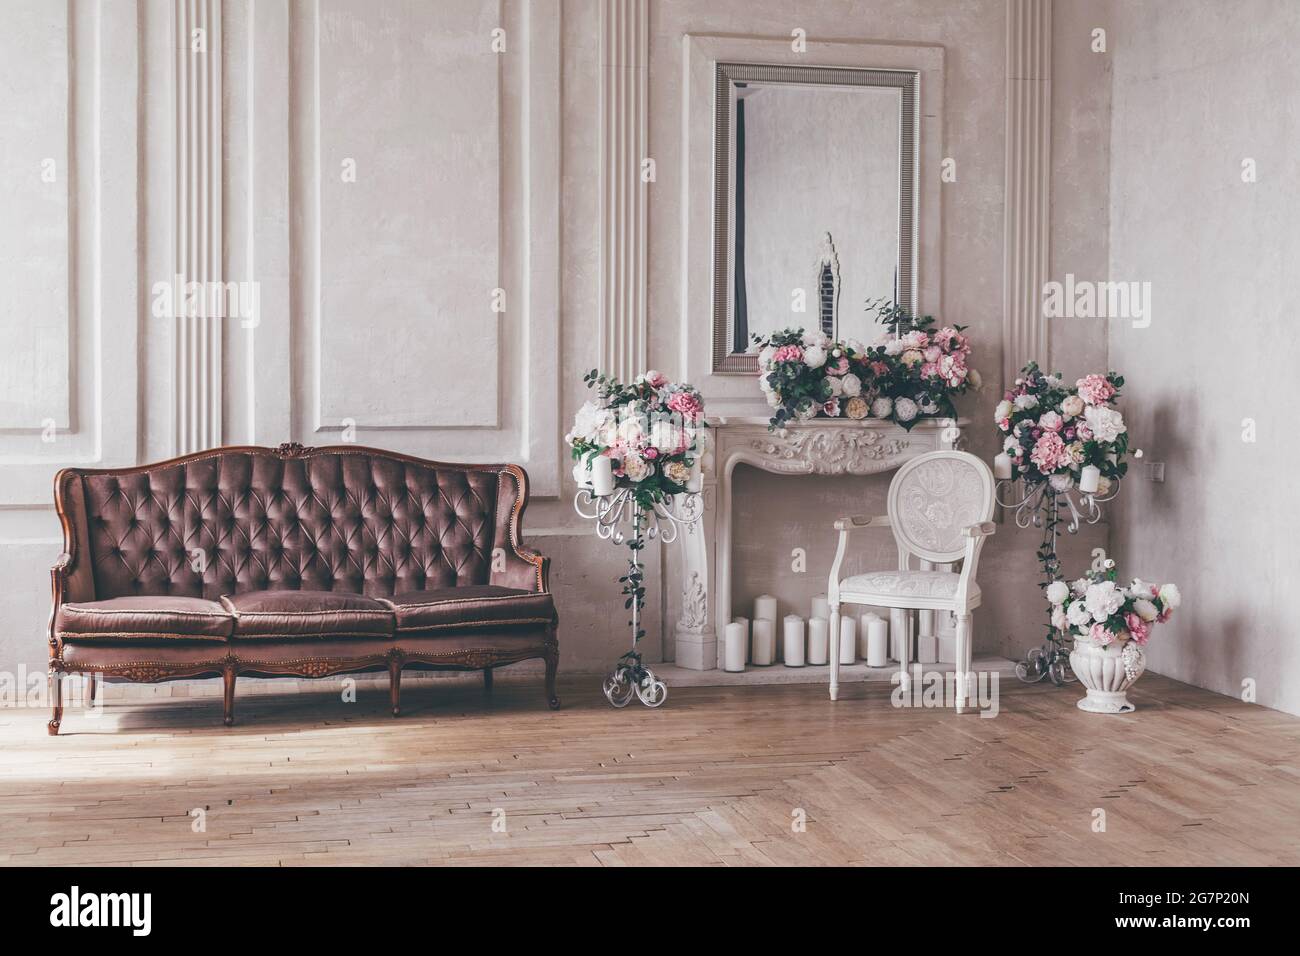 Canapé d'intérieur vintage avec un vase de fleurs dans un style chic et chic. Banque D'Images